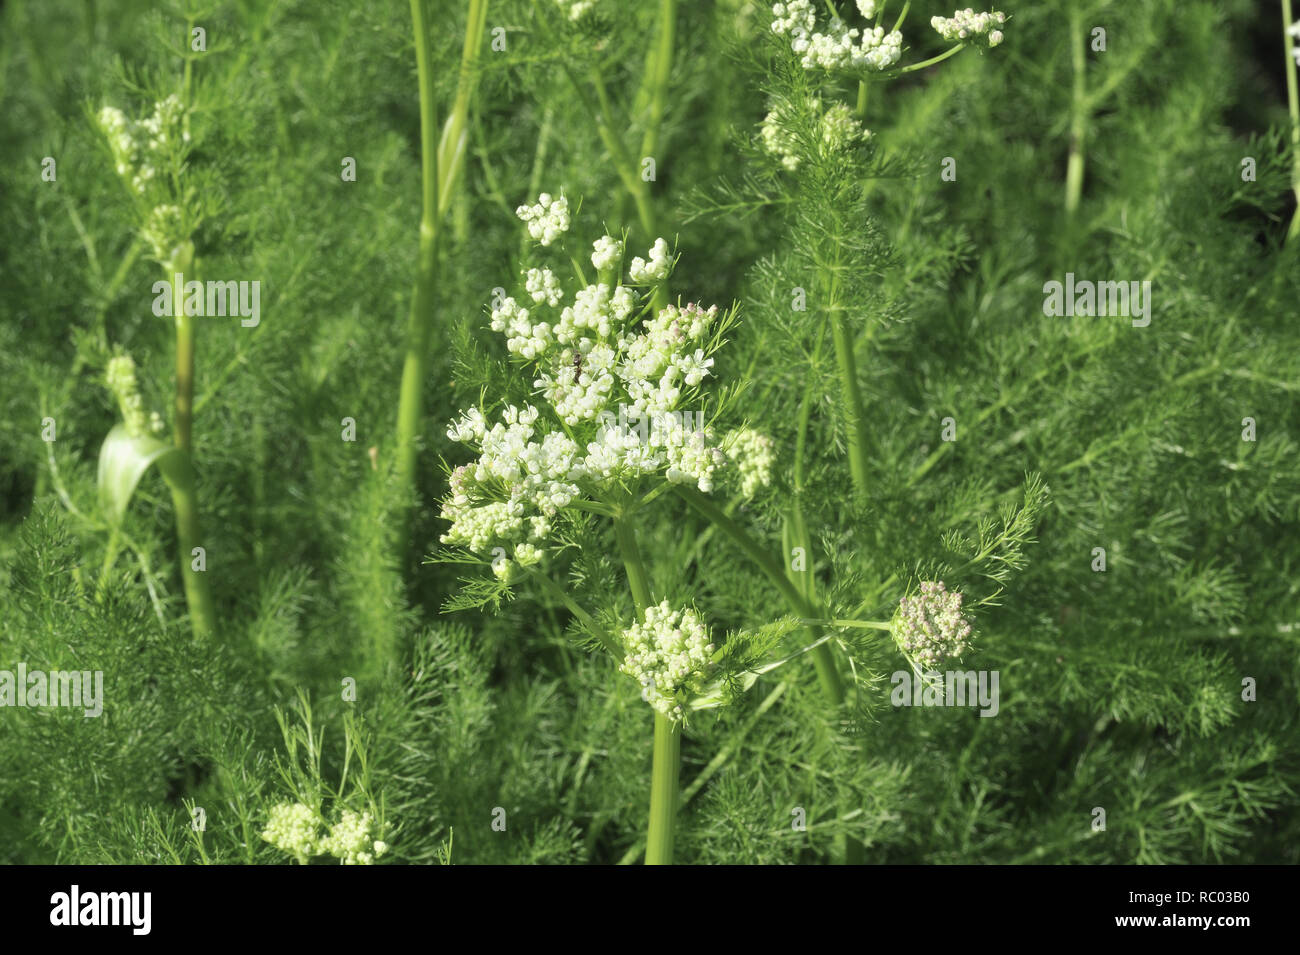 Bärwurz, Meum athamanticum, in der Blüte | Meum athamanticum, Baldmoney Stock Photo